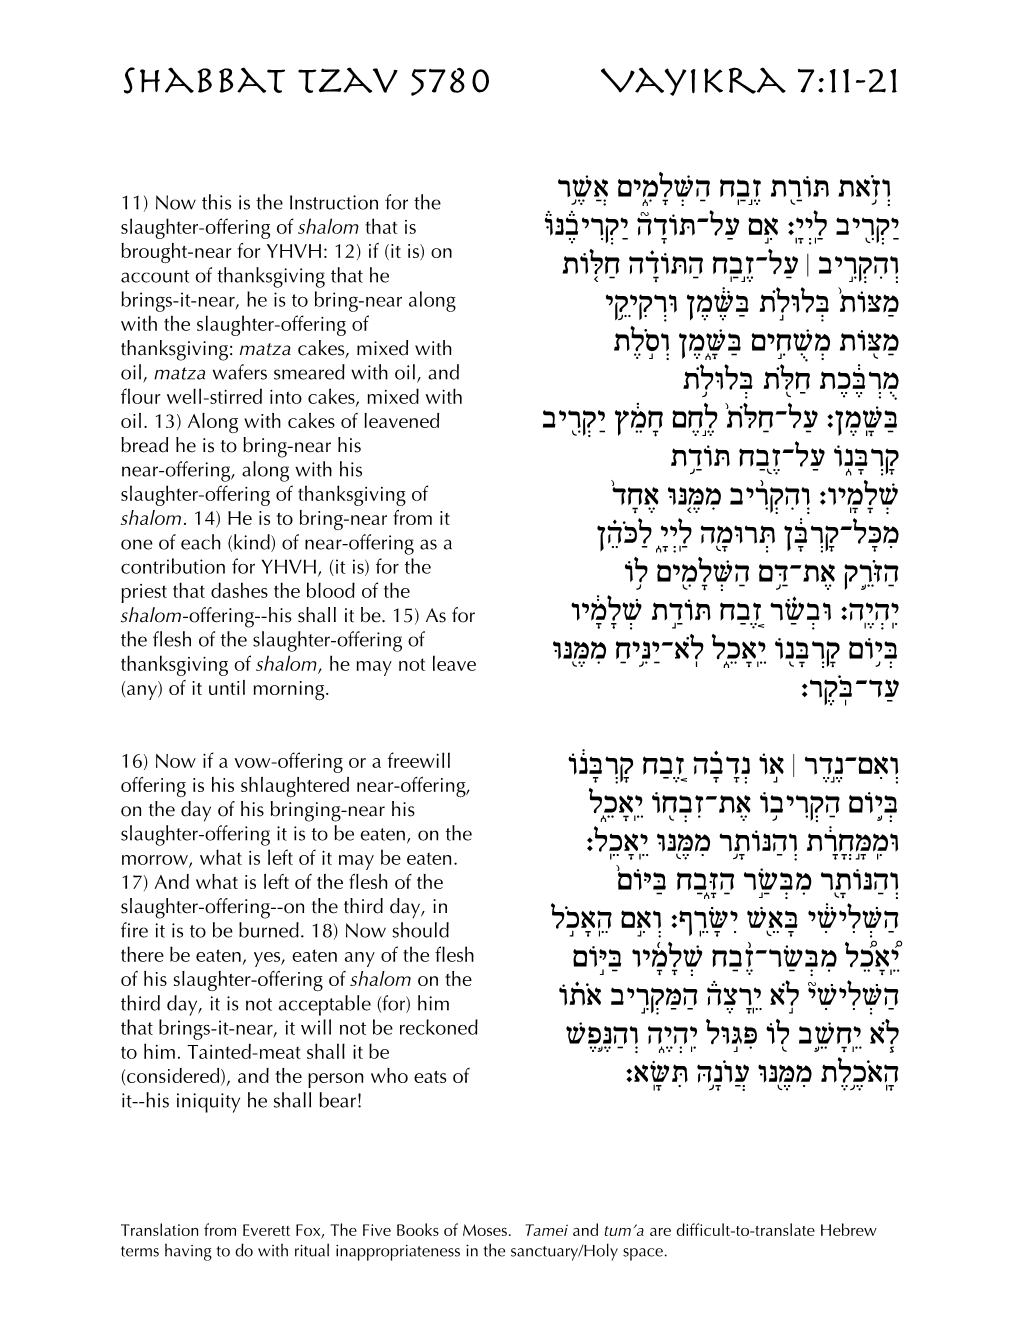 Shabbat Tzav 5780 Vayikra 7:11-21